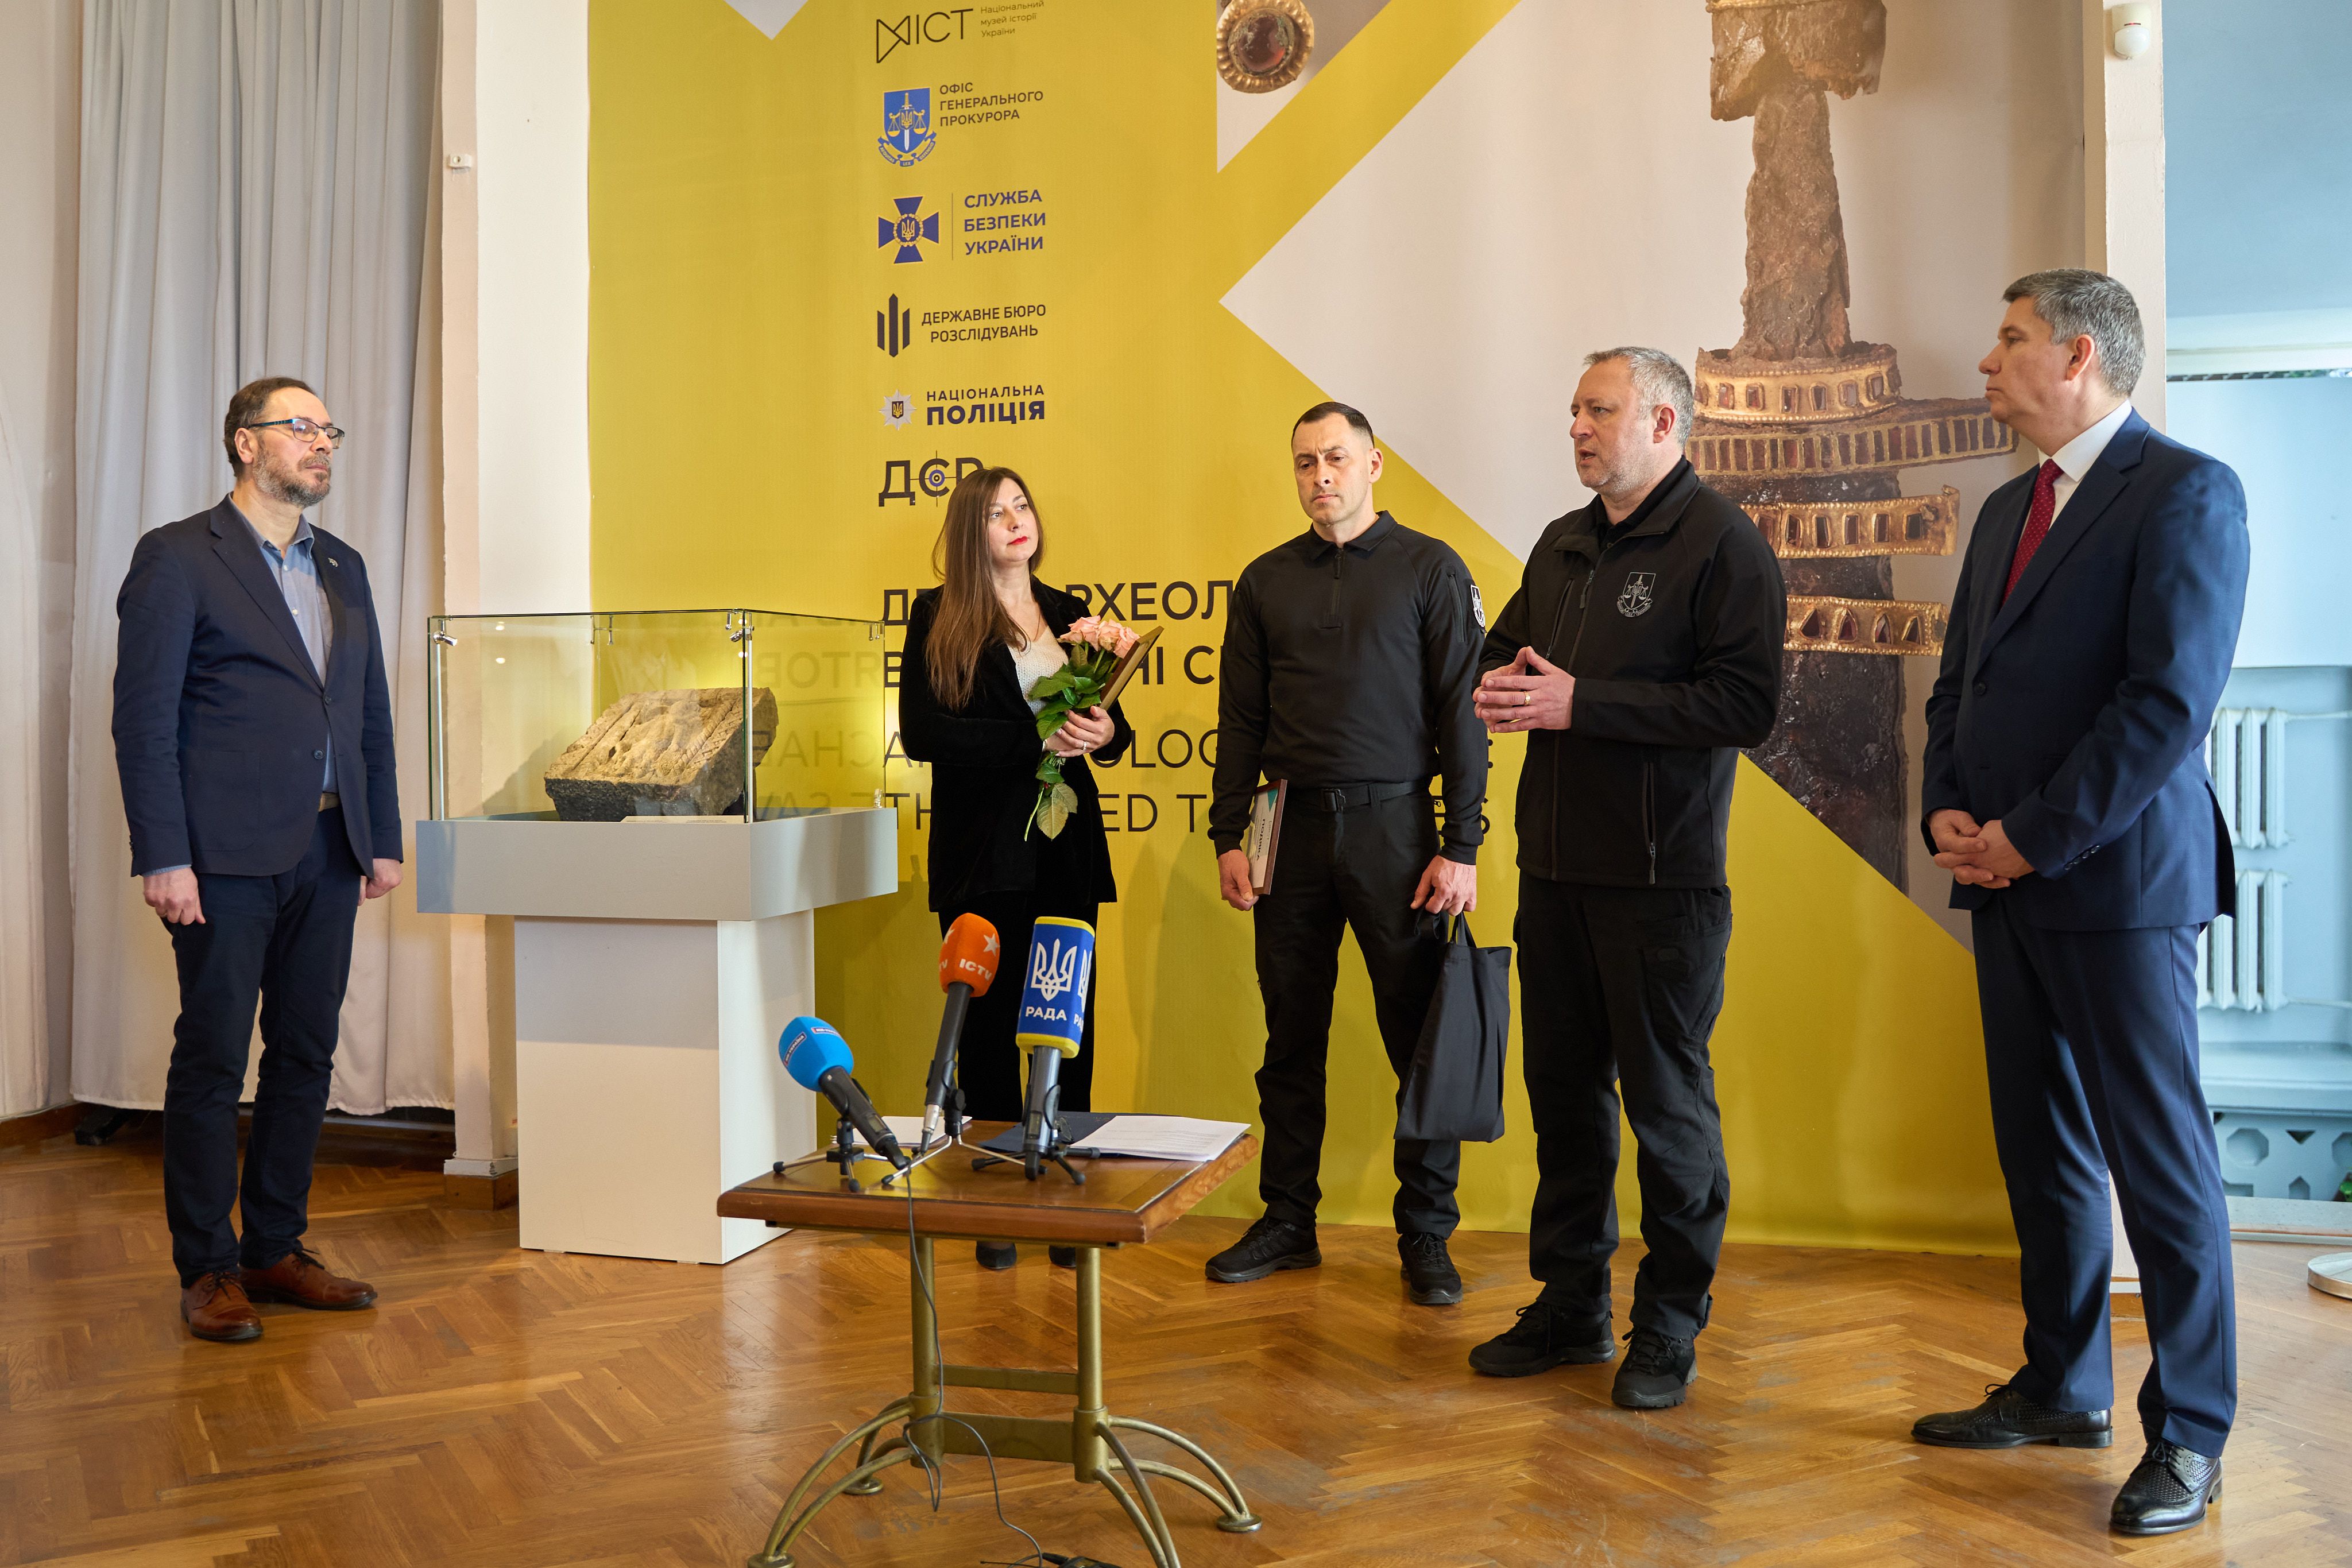 Унікальна плита Святого Воїна часів Київської Русі стала експонатом Національного музею історії України.